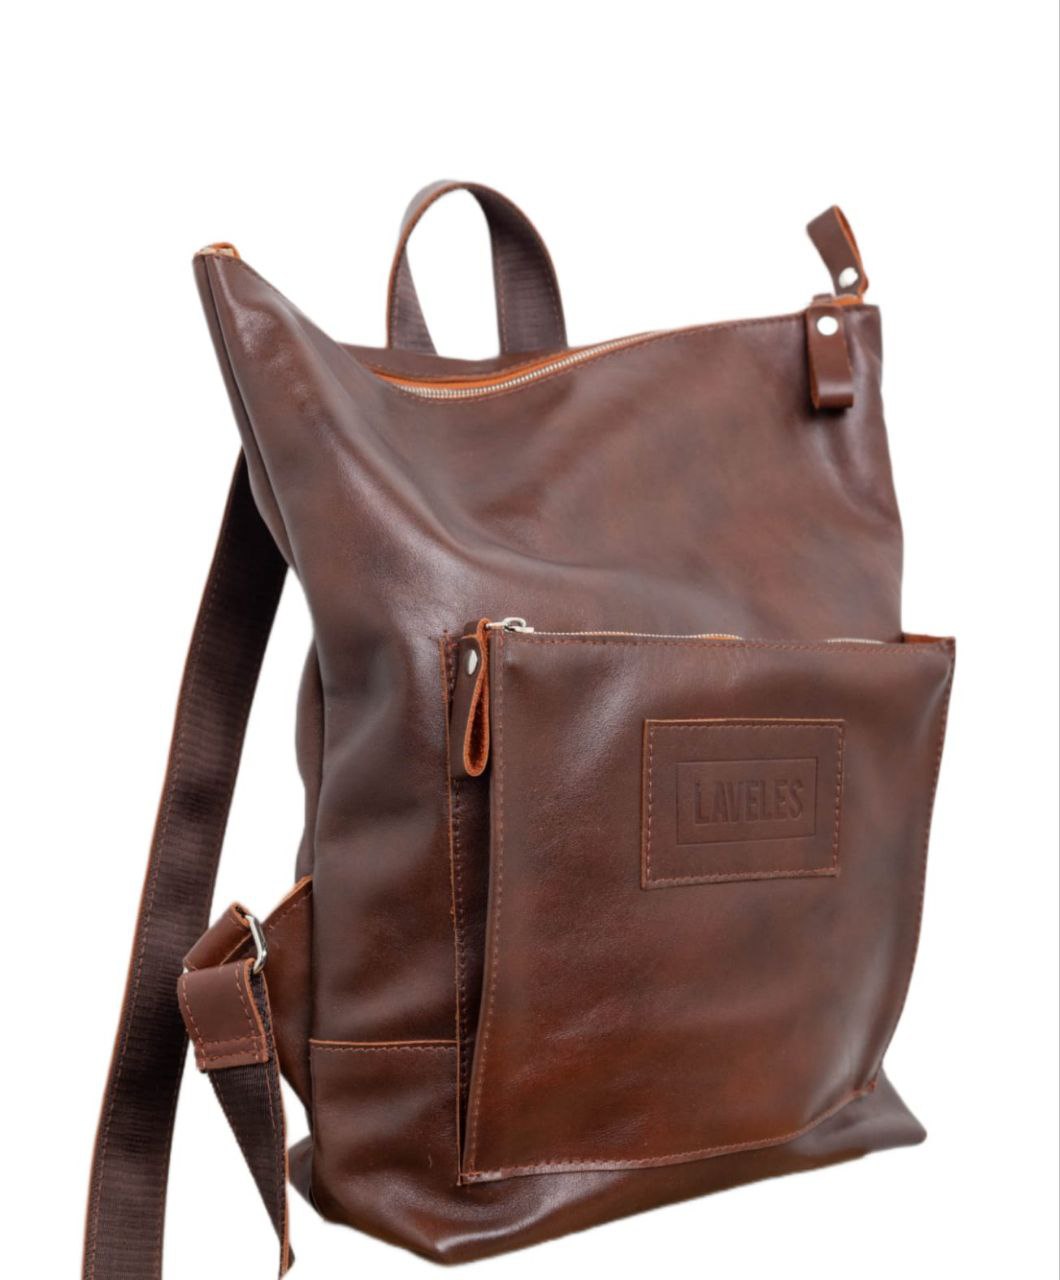 Сумка-рюкзак унисекс LAVELES 10002 коричневая, 40х29х11 см